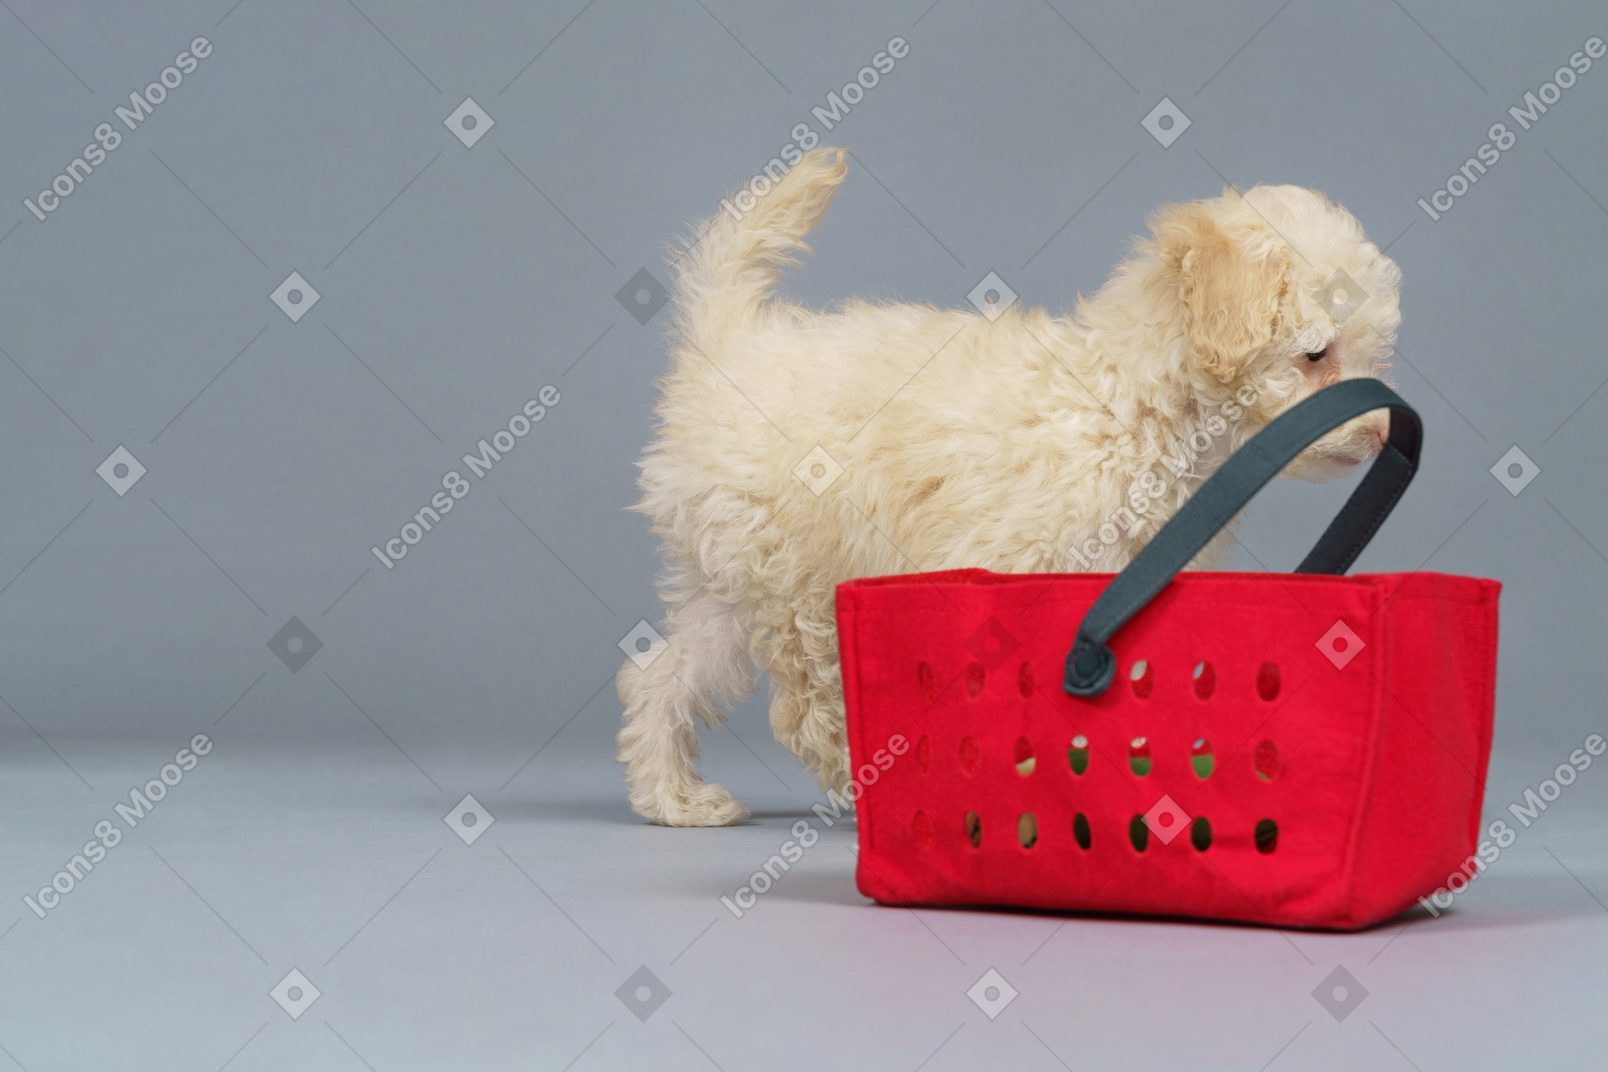 De corpo inteiro de um pequeno poodle e um carrinho de compras vermelho